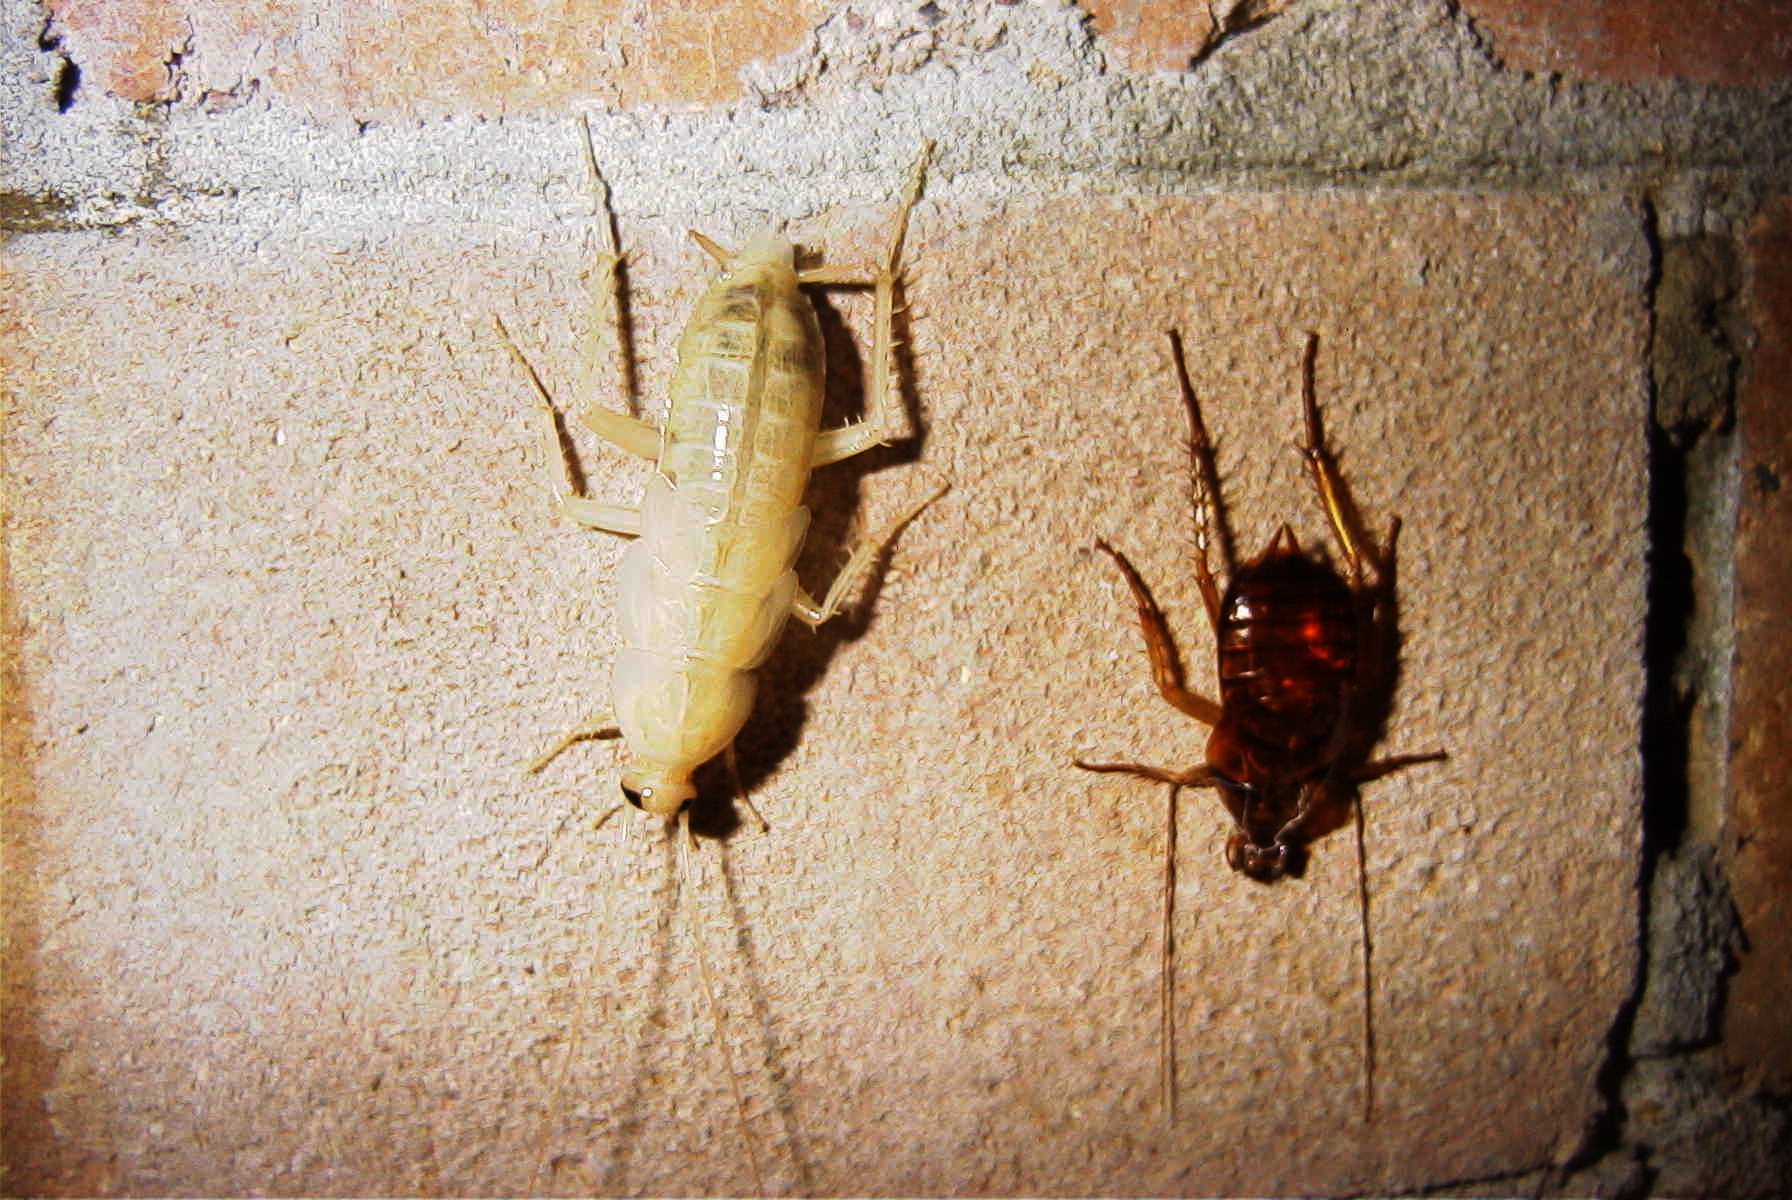 westfield cockroach